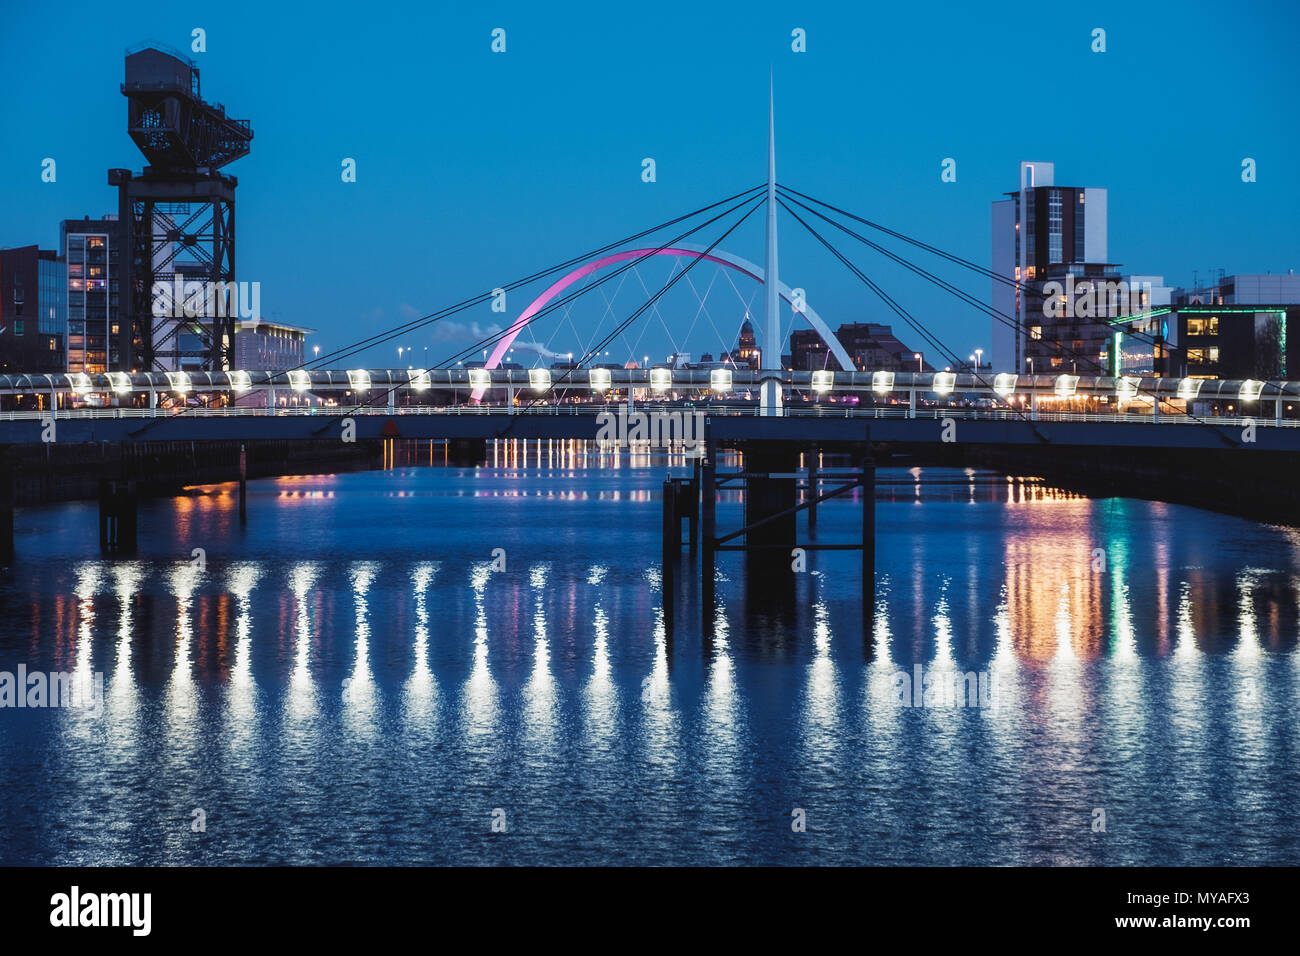 Nuit paysage urbain avec deux ponts sur la rivière Clyde, Millennium Bridge et le Clyde Arc, Glasgow, Écosse Banque D'Images